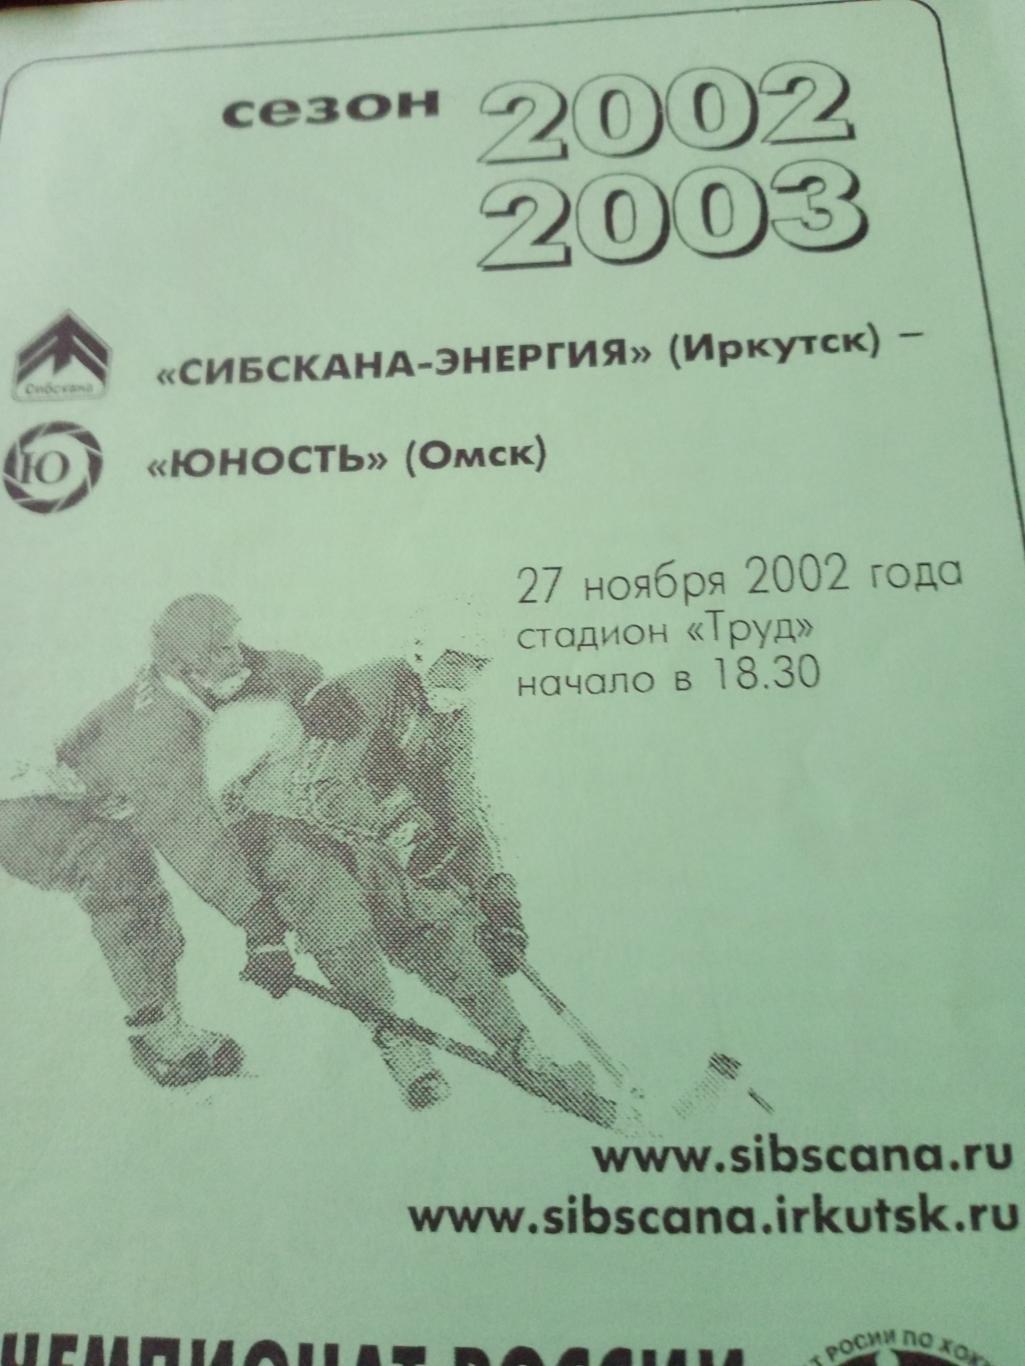 Сибскана Иркутск - Юность Омск - 27.11.2002 год